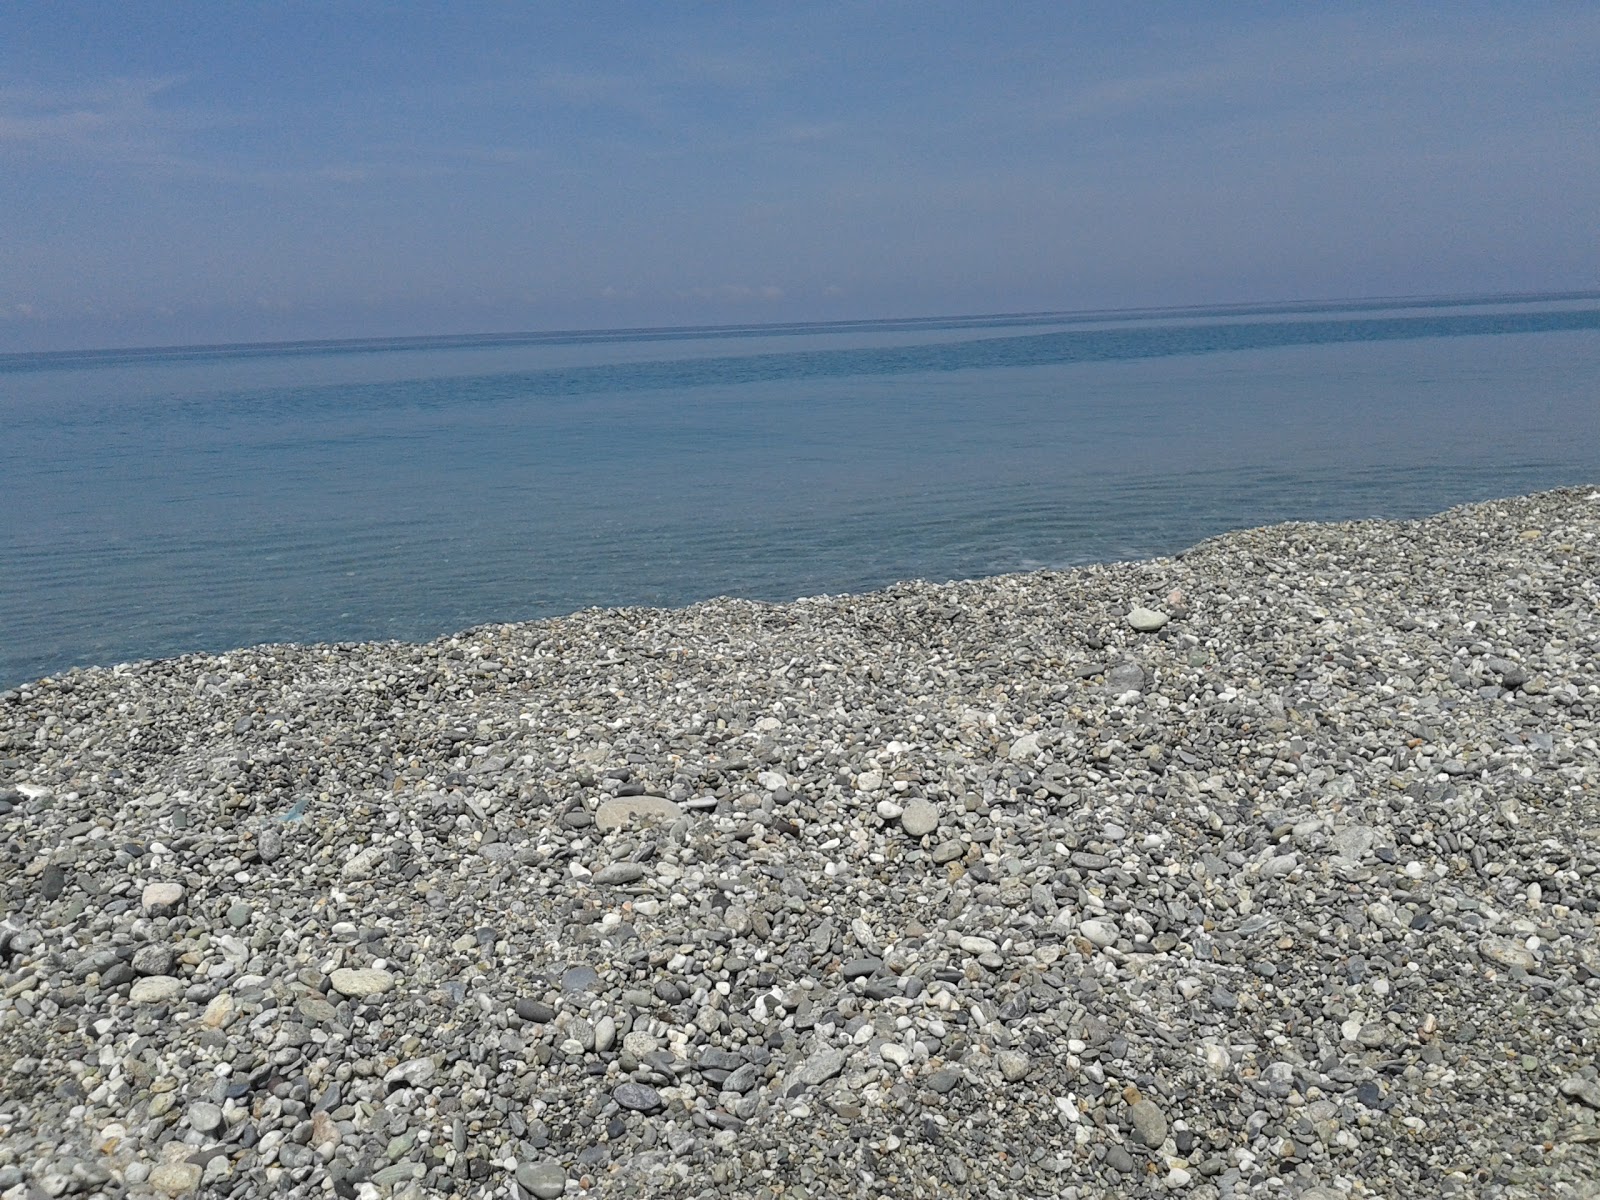 Foto de Scaro-Reggio-Scornavacca-Vardano beach com água azul superfície